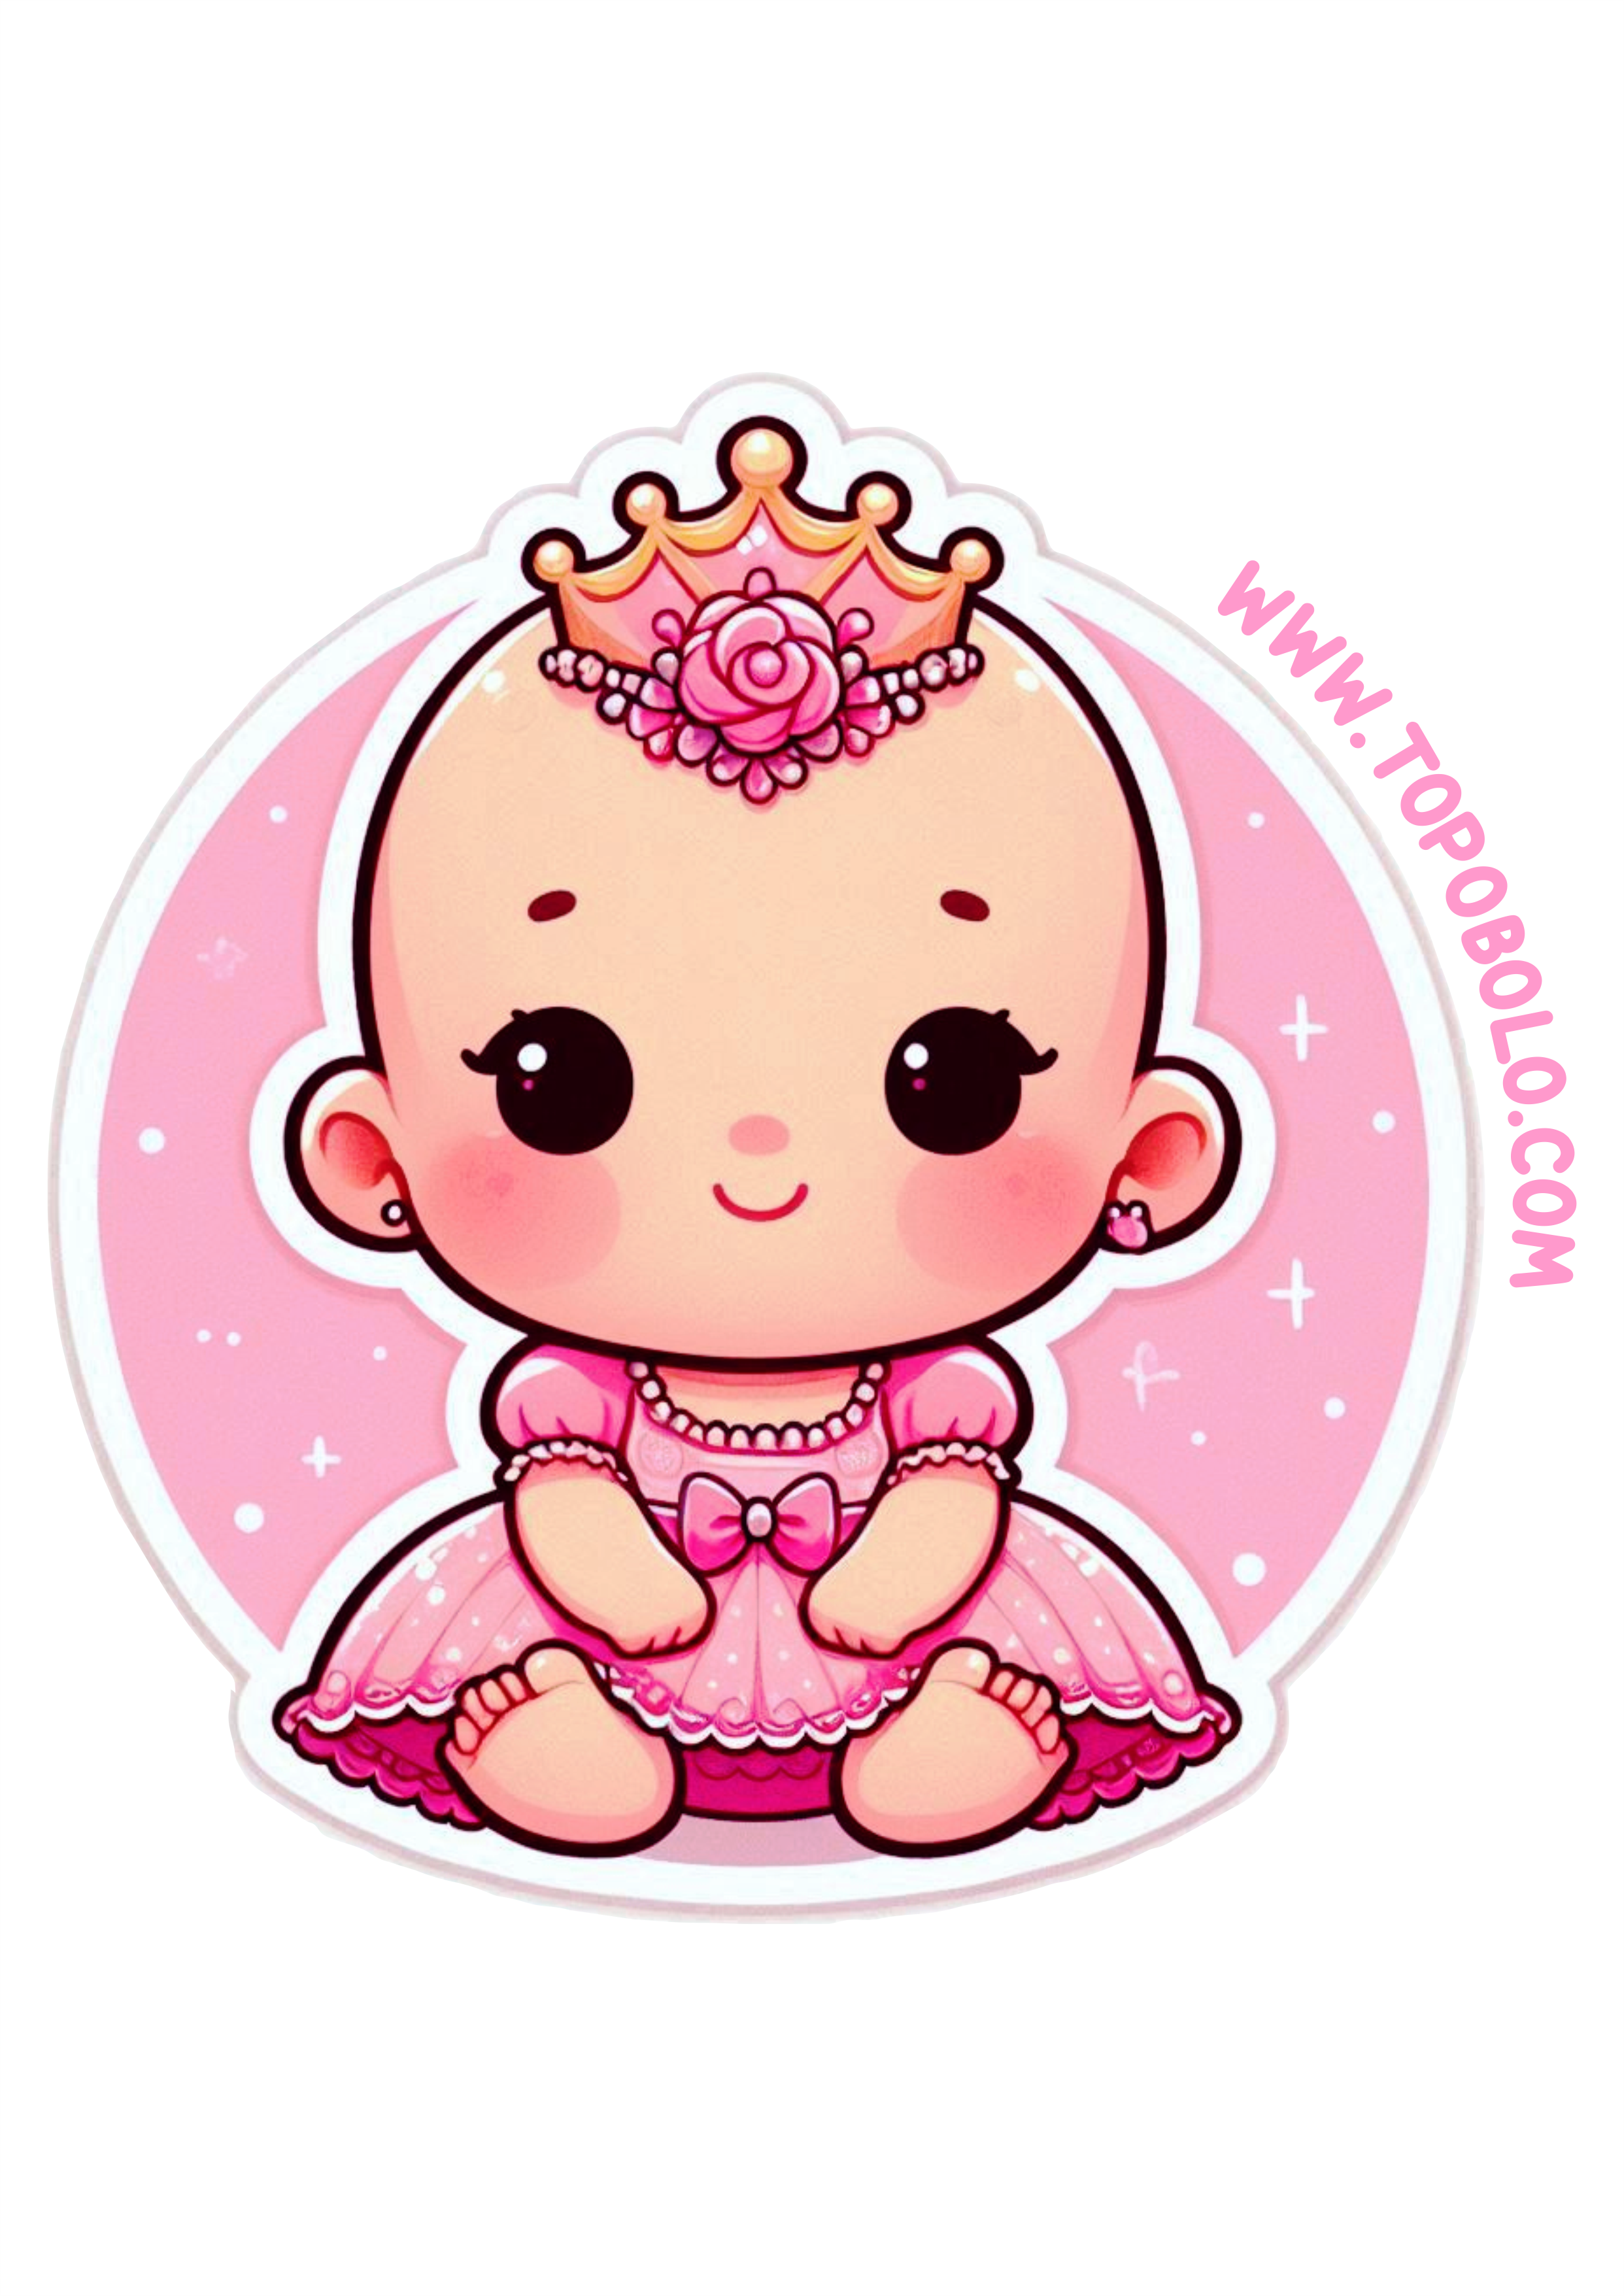 Bebezinha com roupinha de princesa adesivo redondo para festinha infantil aniversário chá de fralda e festinhas em geral png